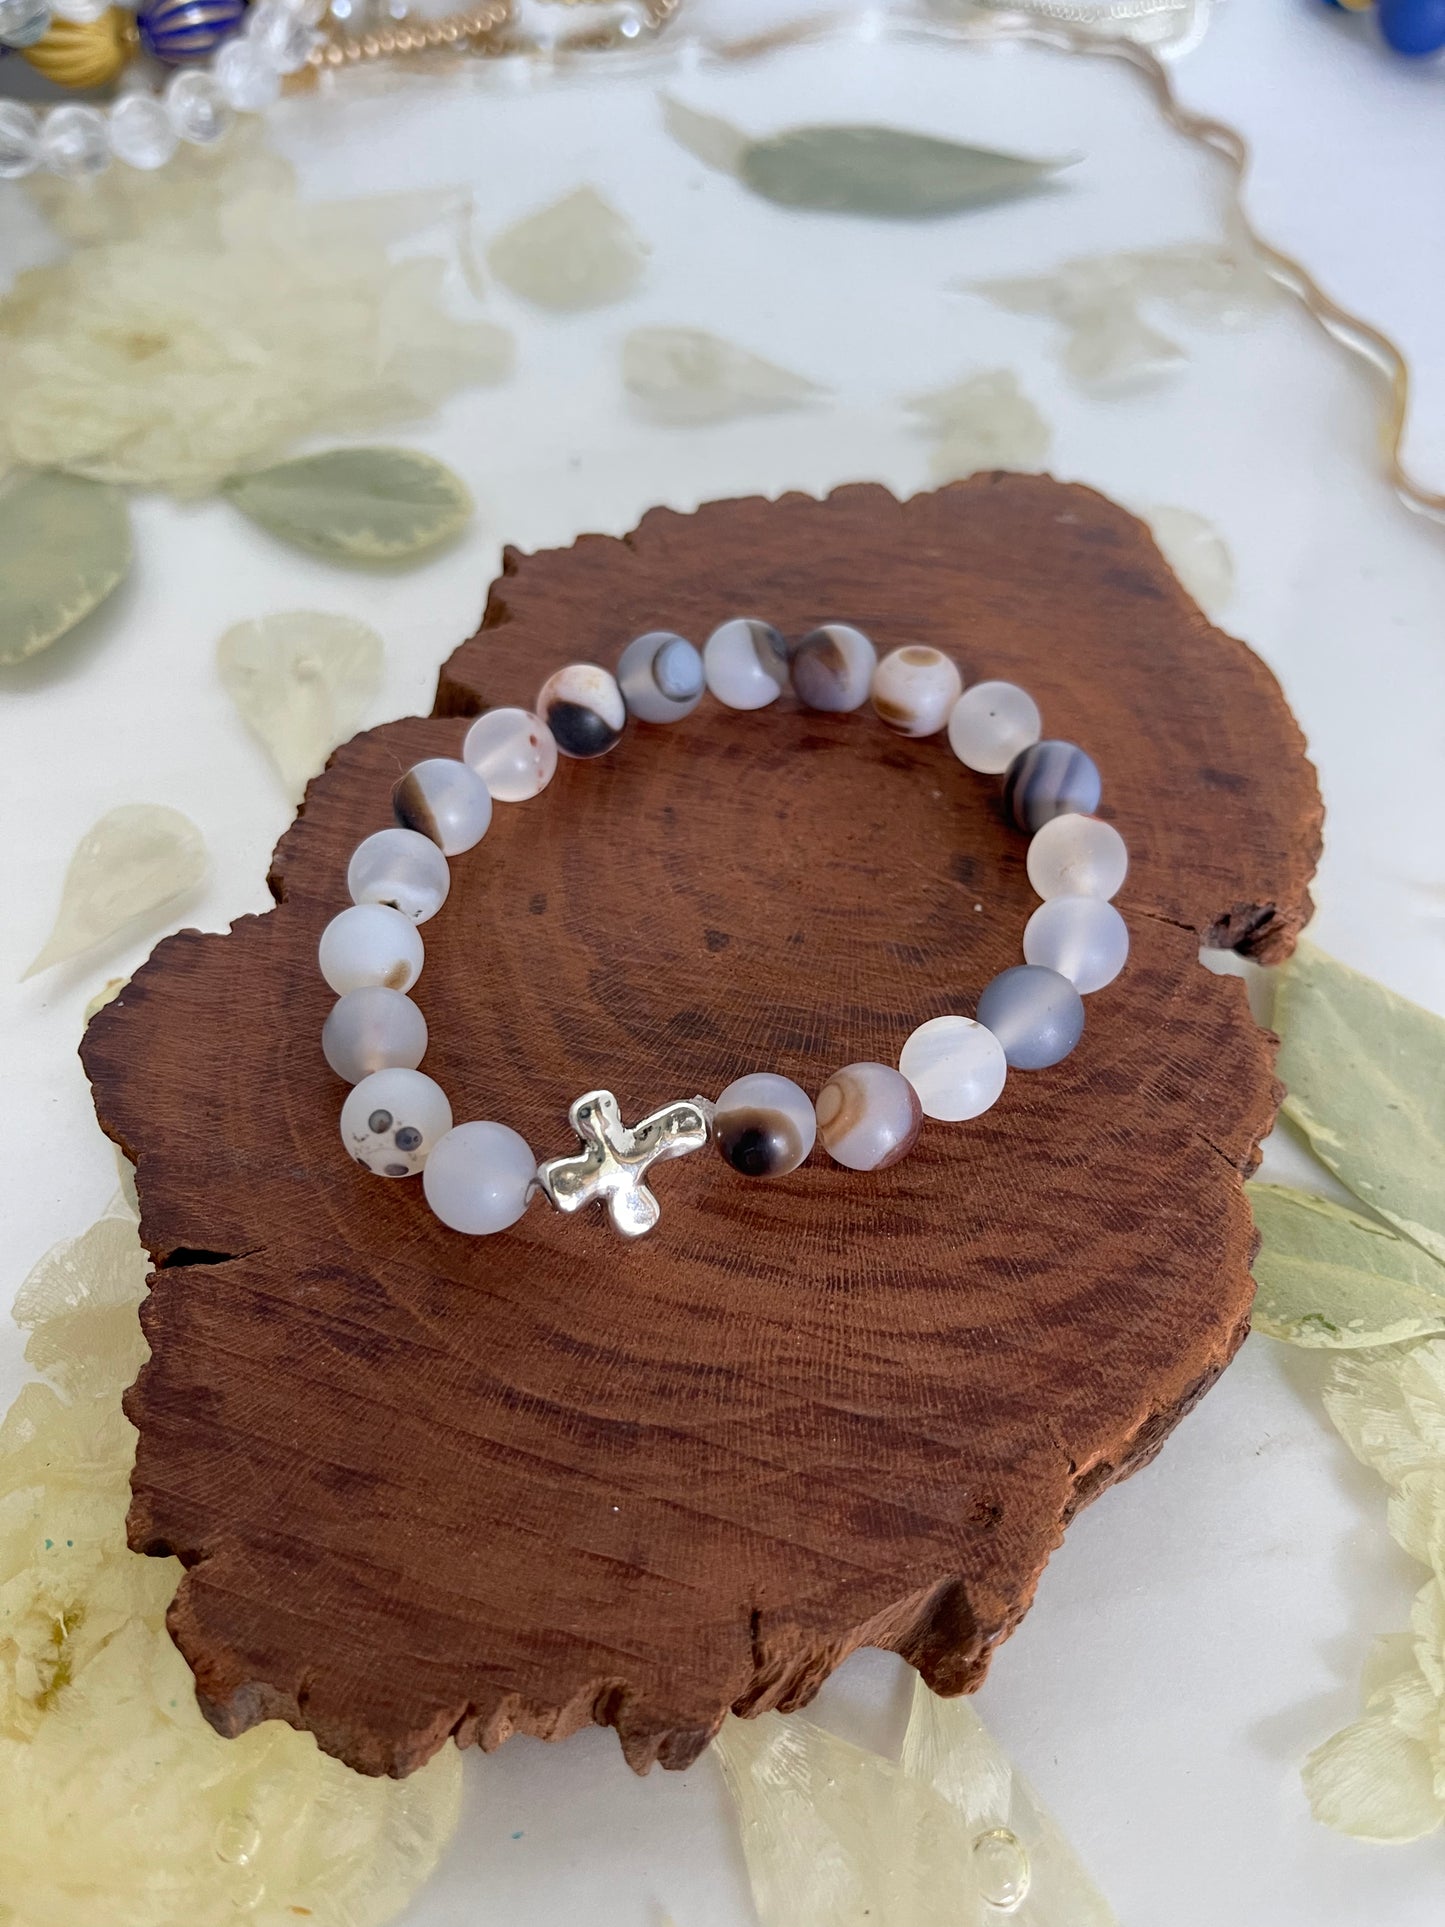 Gemstone Bracelet’s with cross